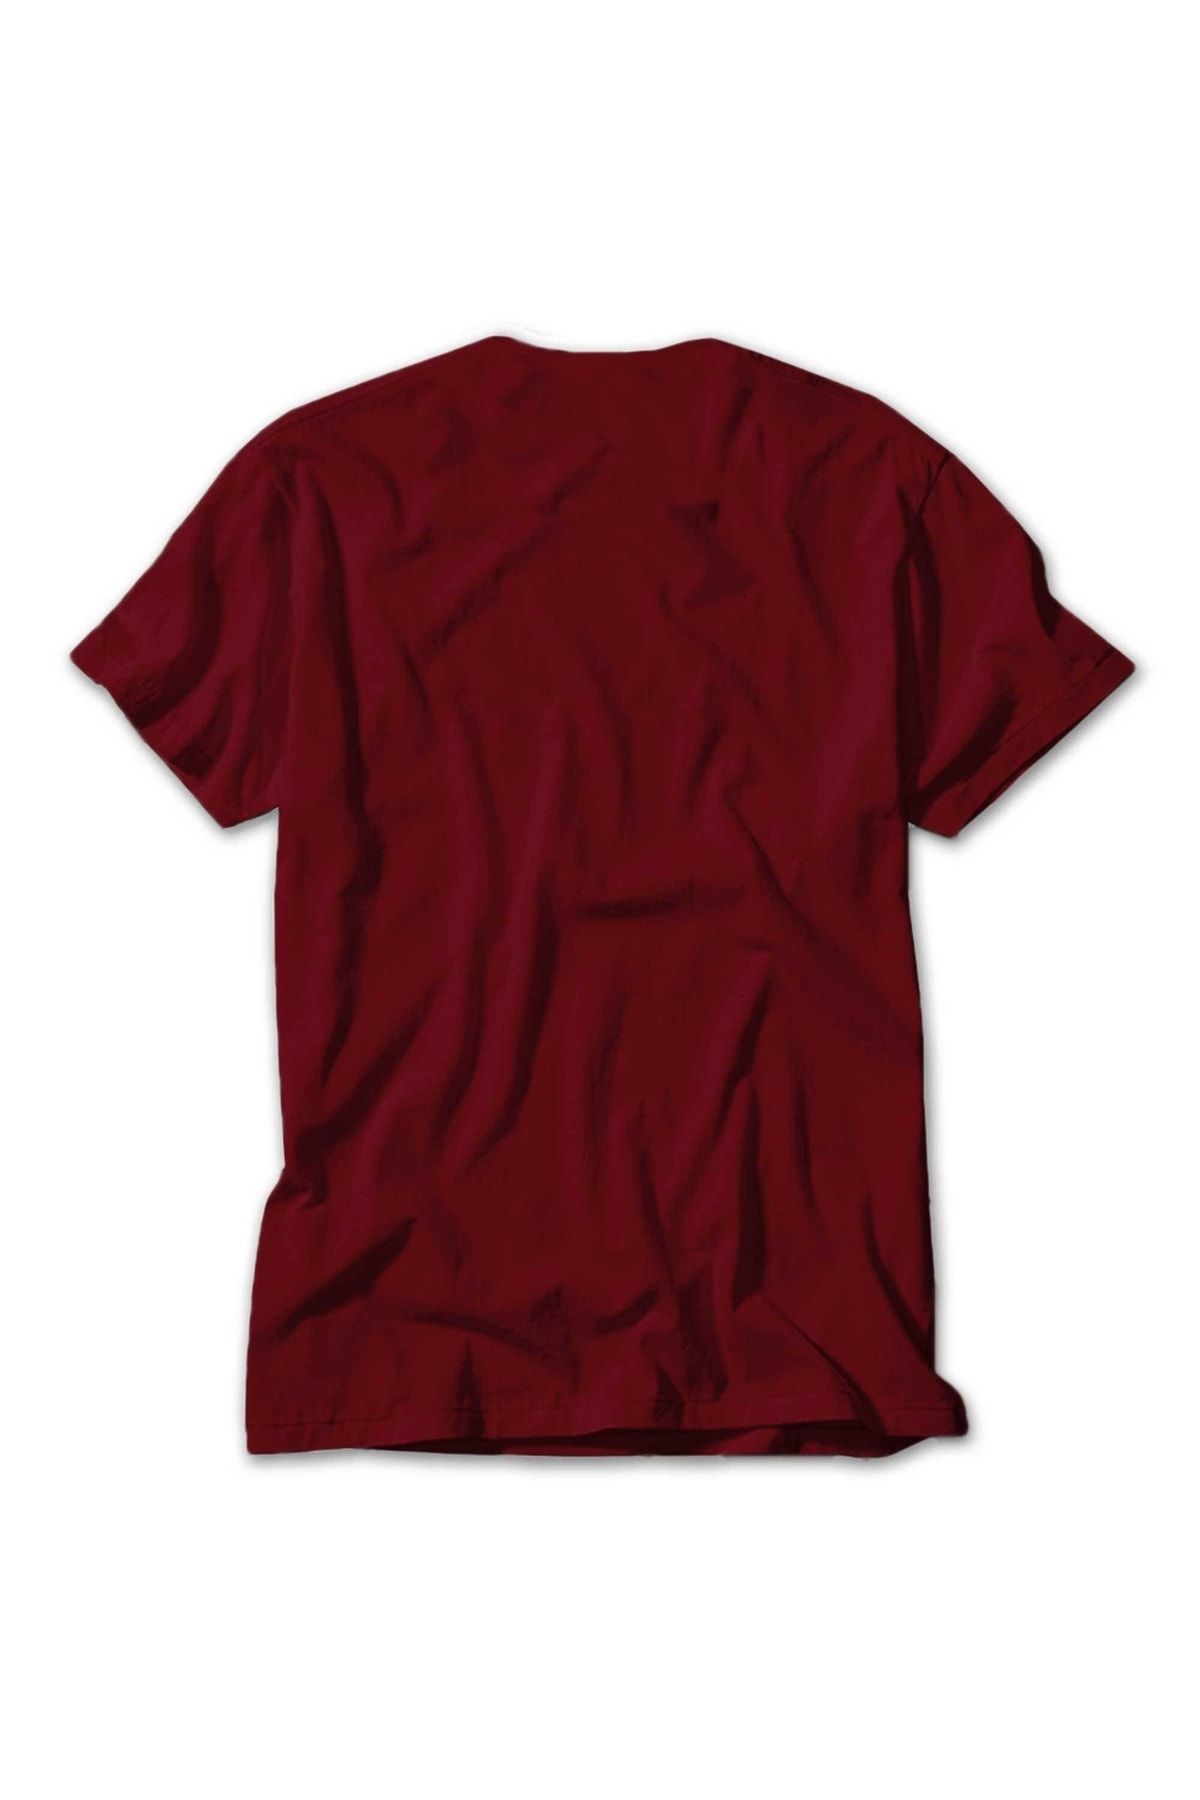 Z zepplin Mayhem A Season In Blasphemy Red T-Shirt - Trendyol